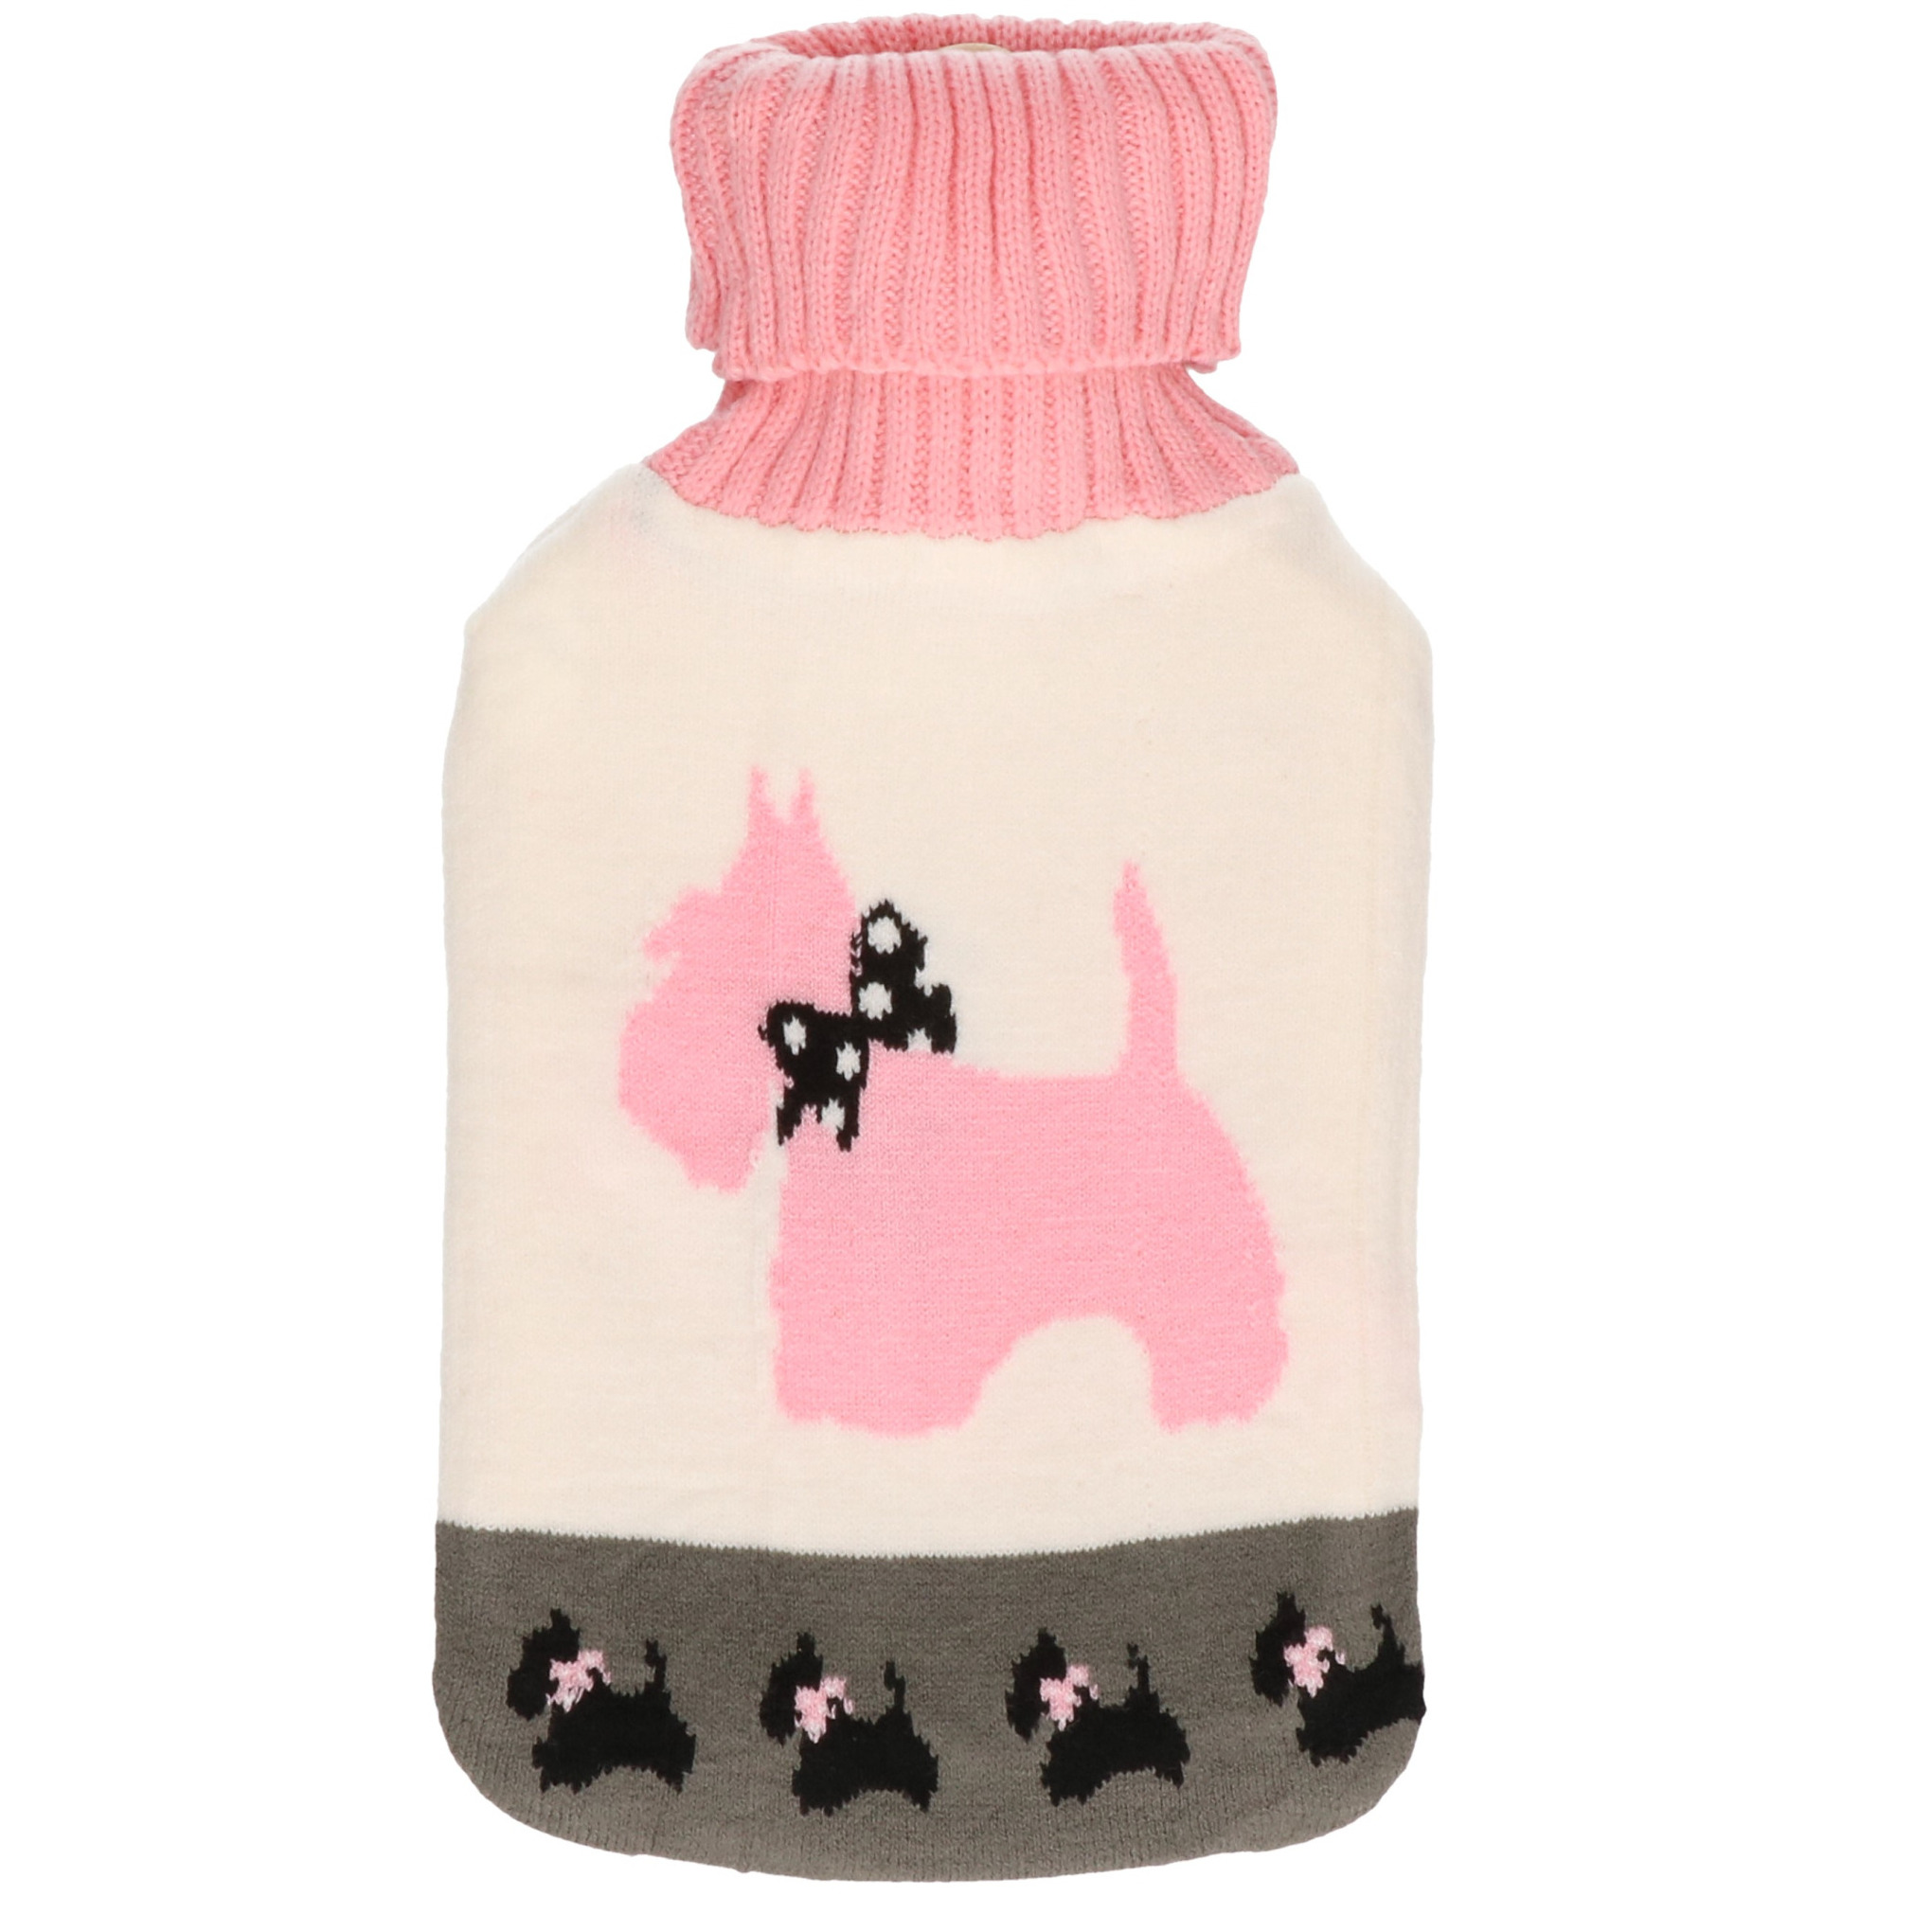 Warmwaterkruik met zachte wit/roze honden hoes 2 liter